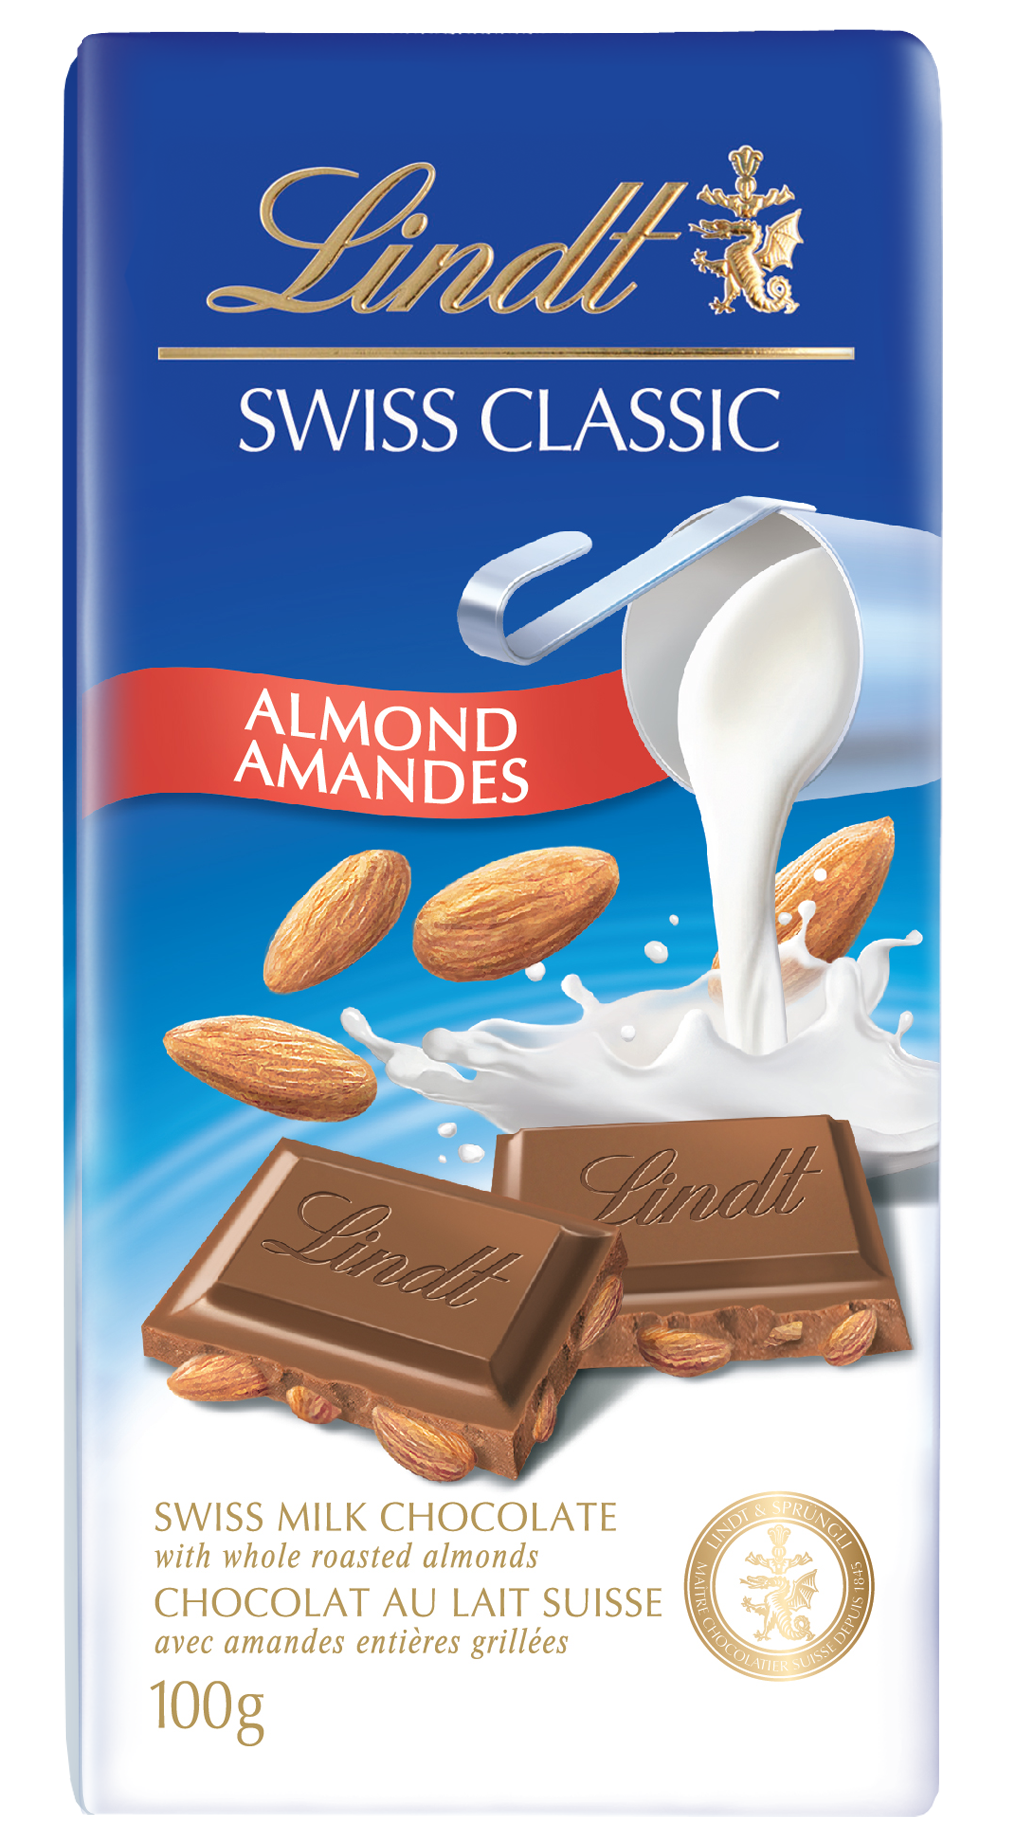 Barre Chocolat au lait Lindt SWISS CLASSIC, 100g